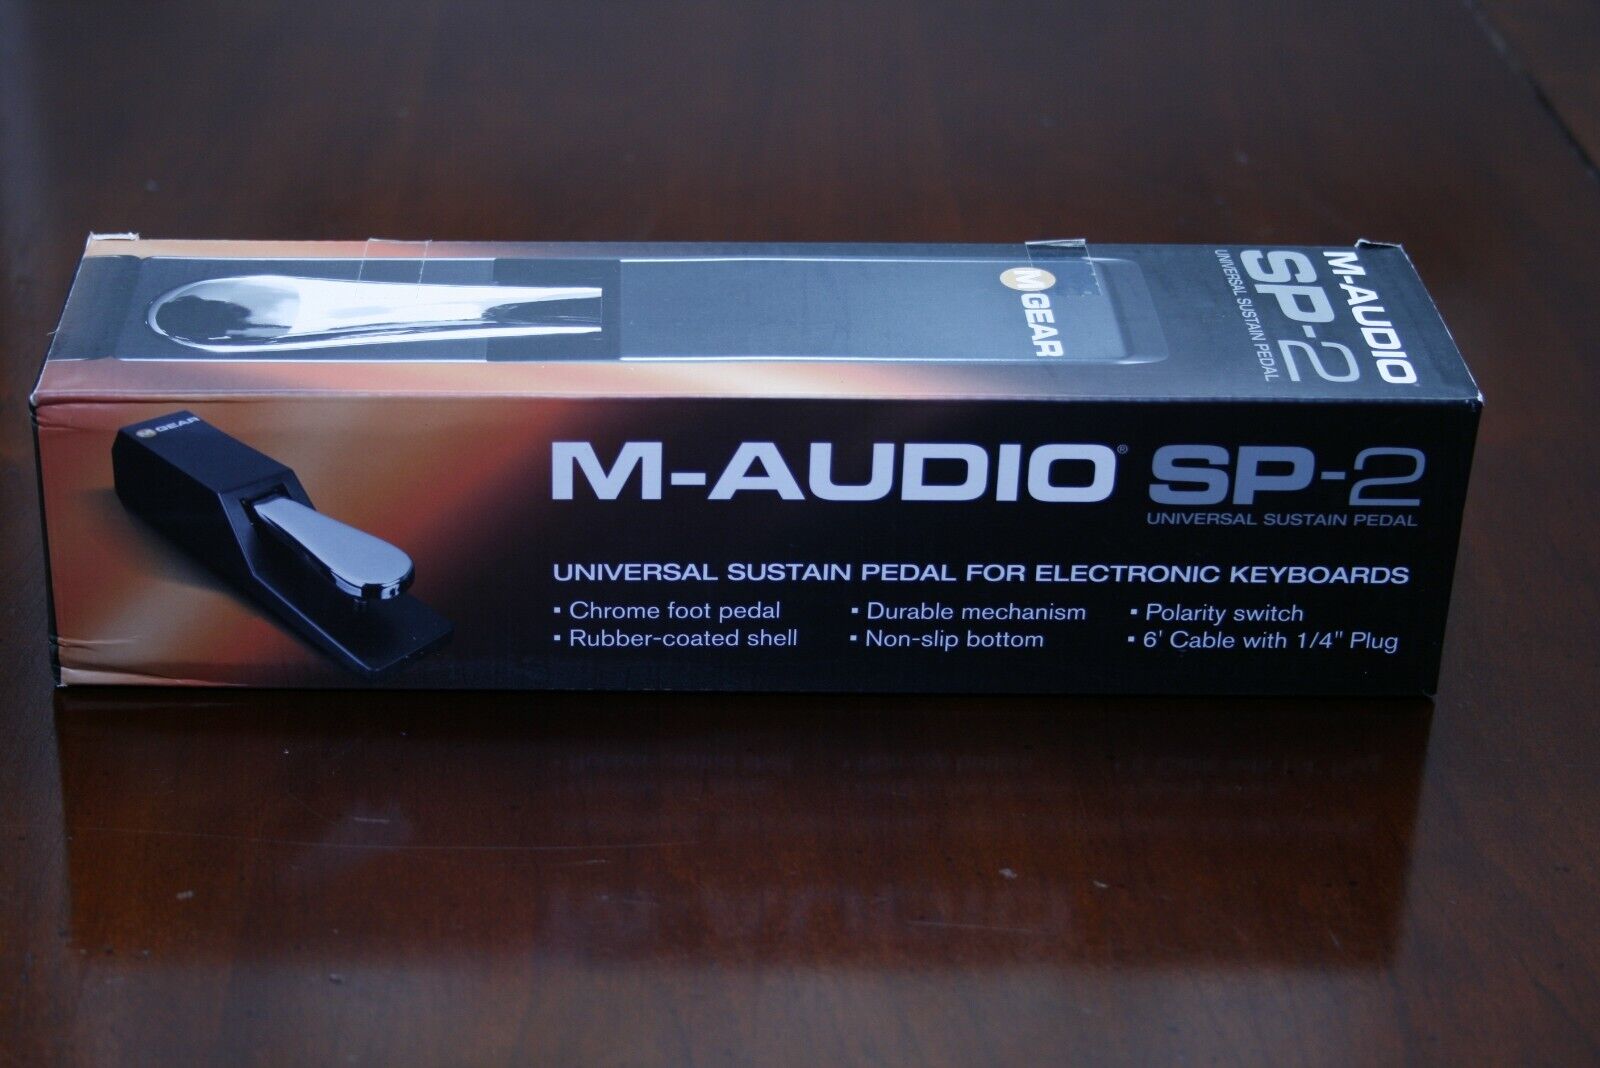 M-audio Sp-2 Universal Sustain Pedal